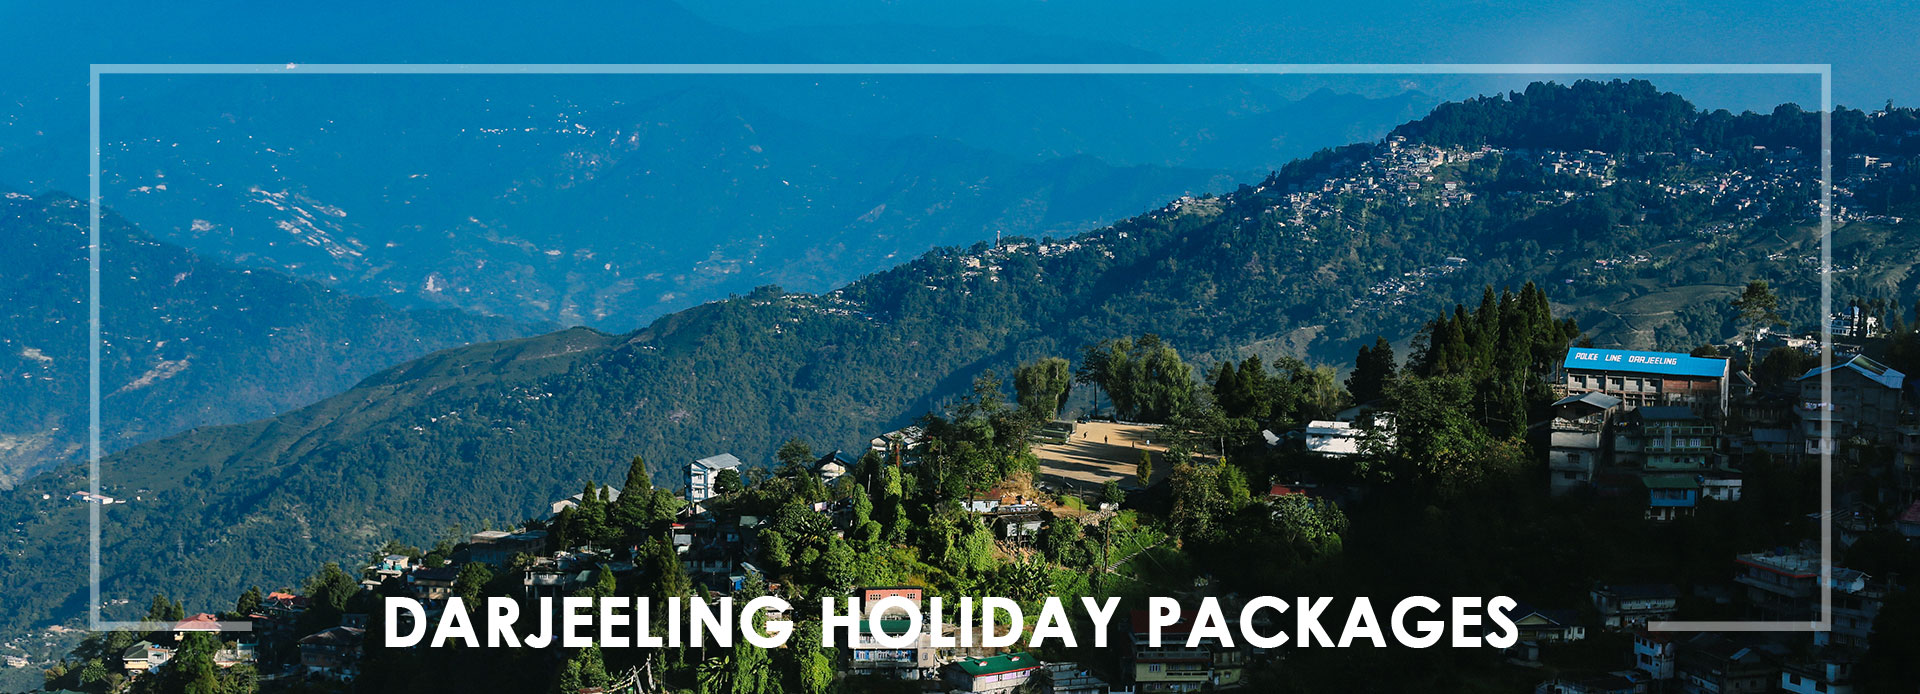  Darjeeling Holiday Packages